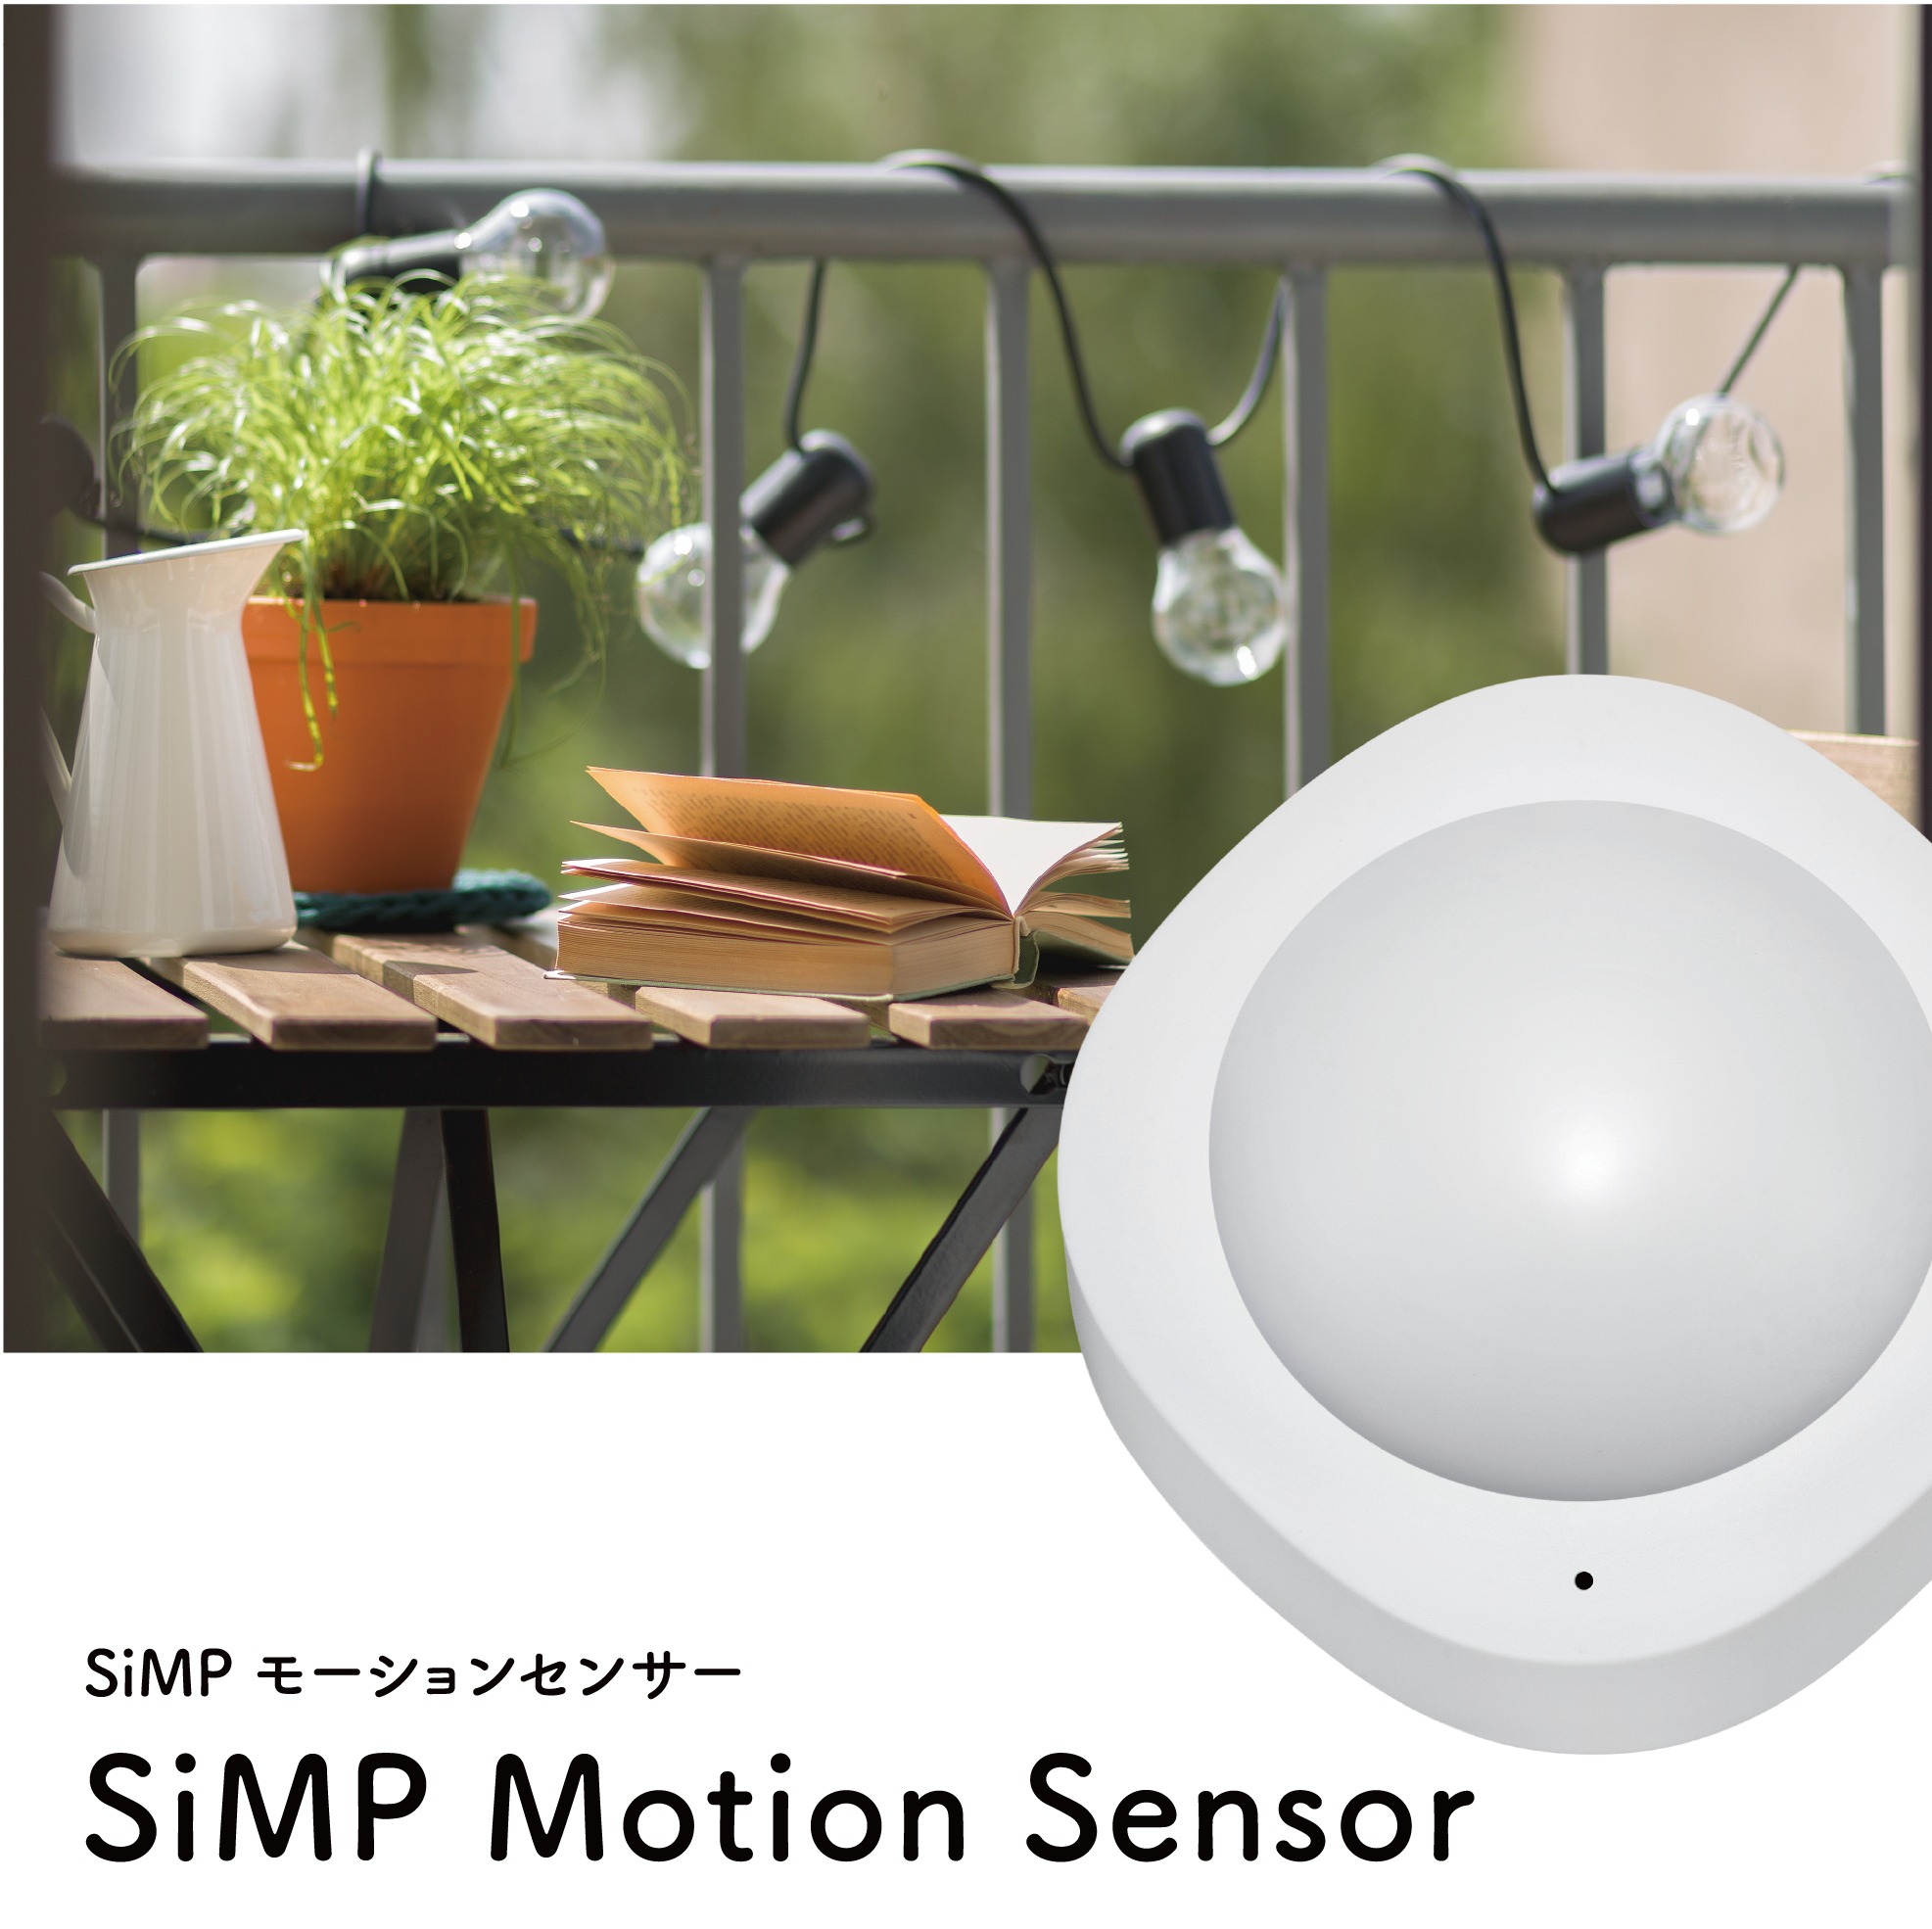 เซ็นเซอร์ตรวจจับความเคลื่อนไหว SiMPNiC SMARTHOME SiMP Motion Sensor #SMARTHOME